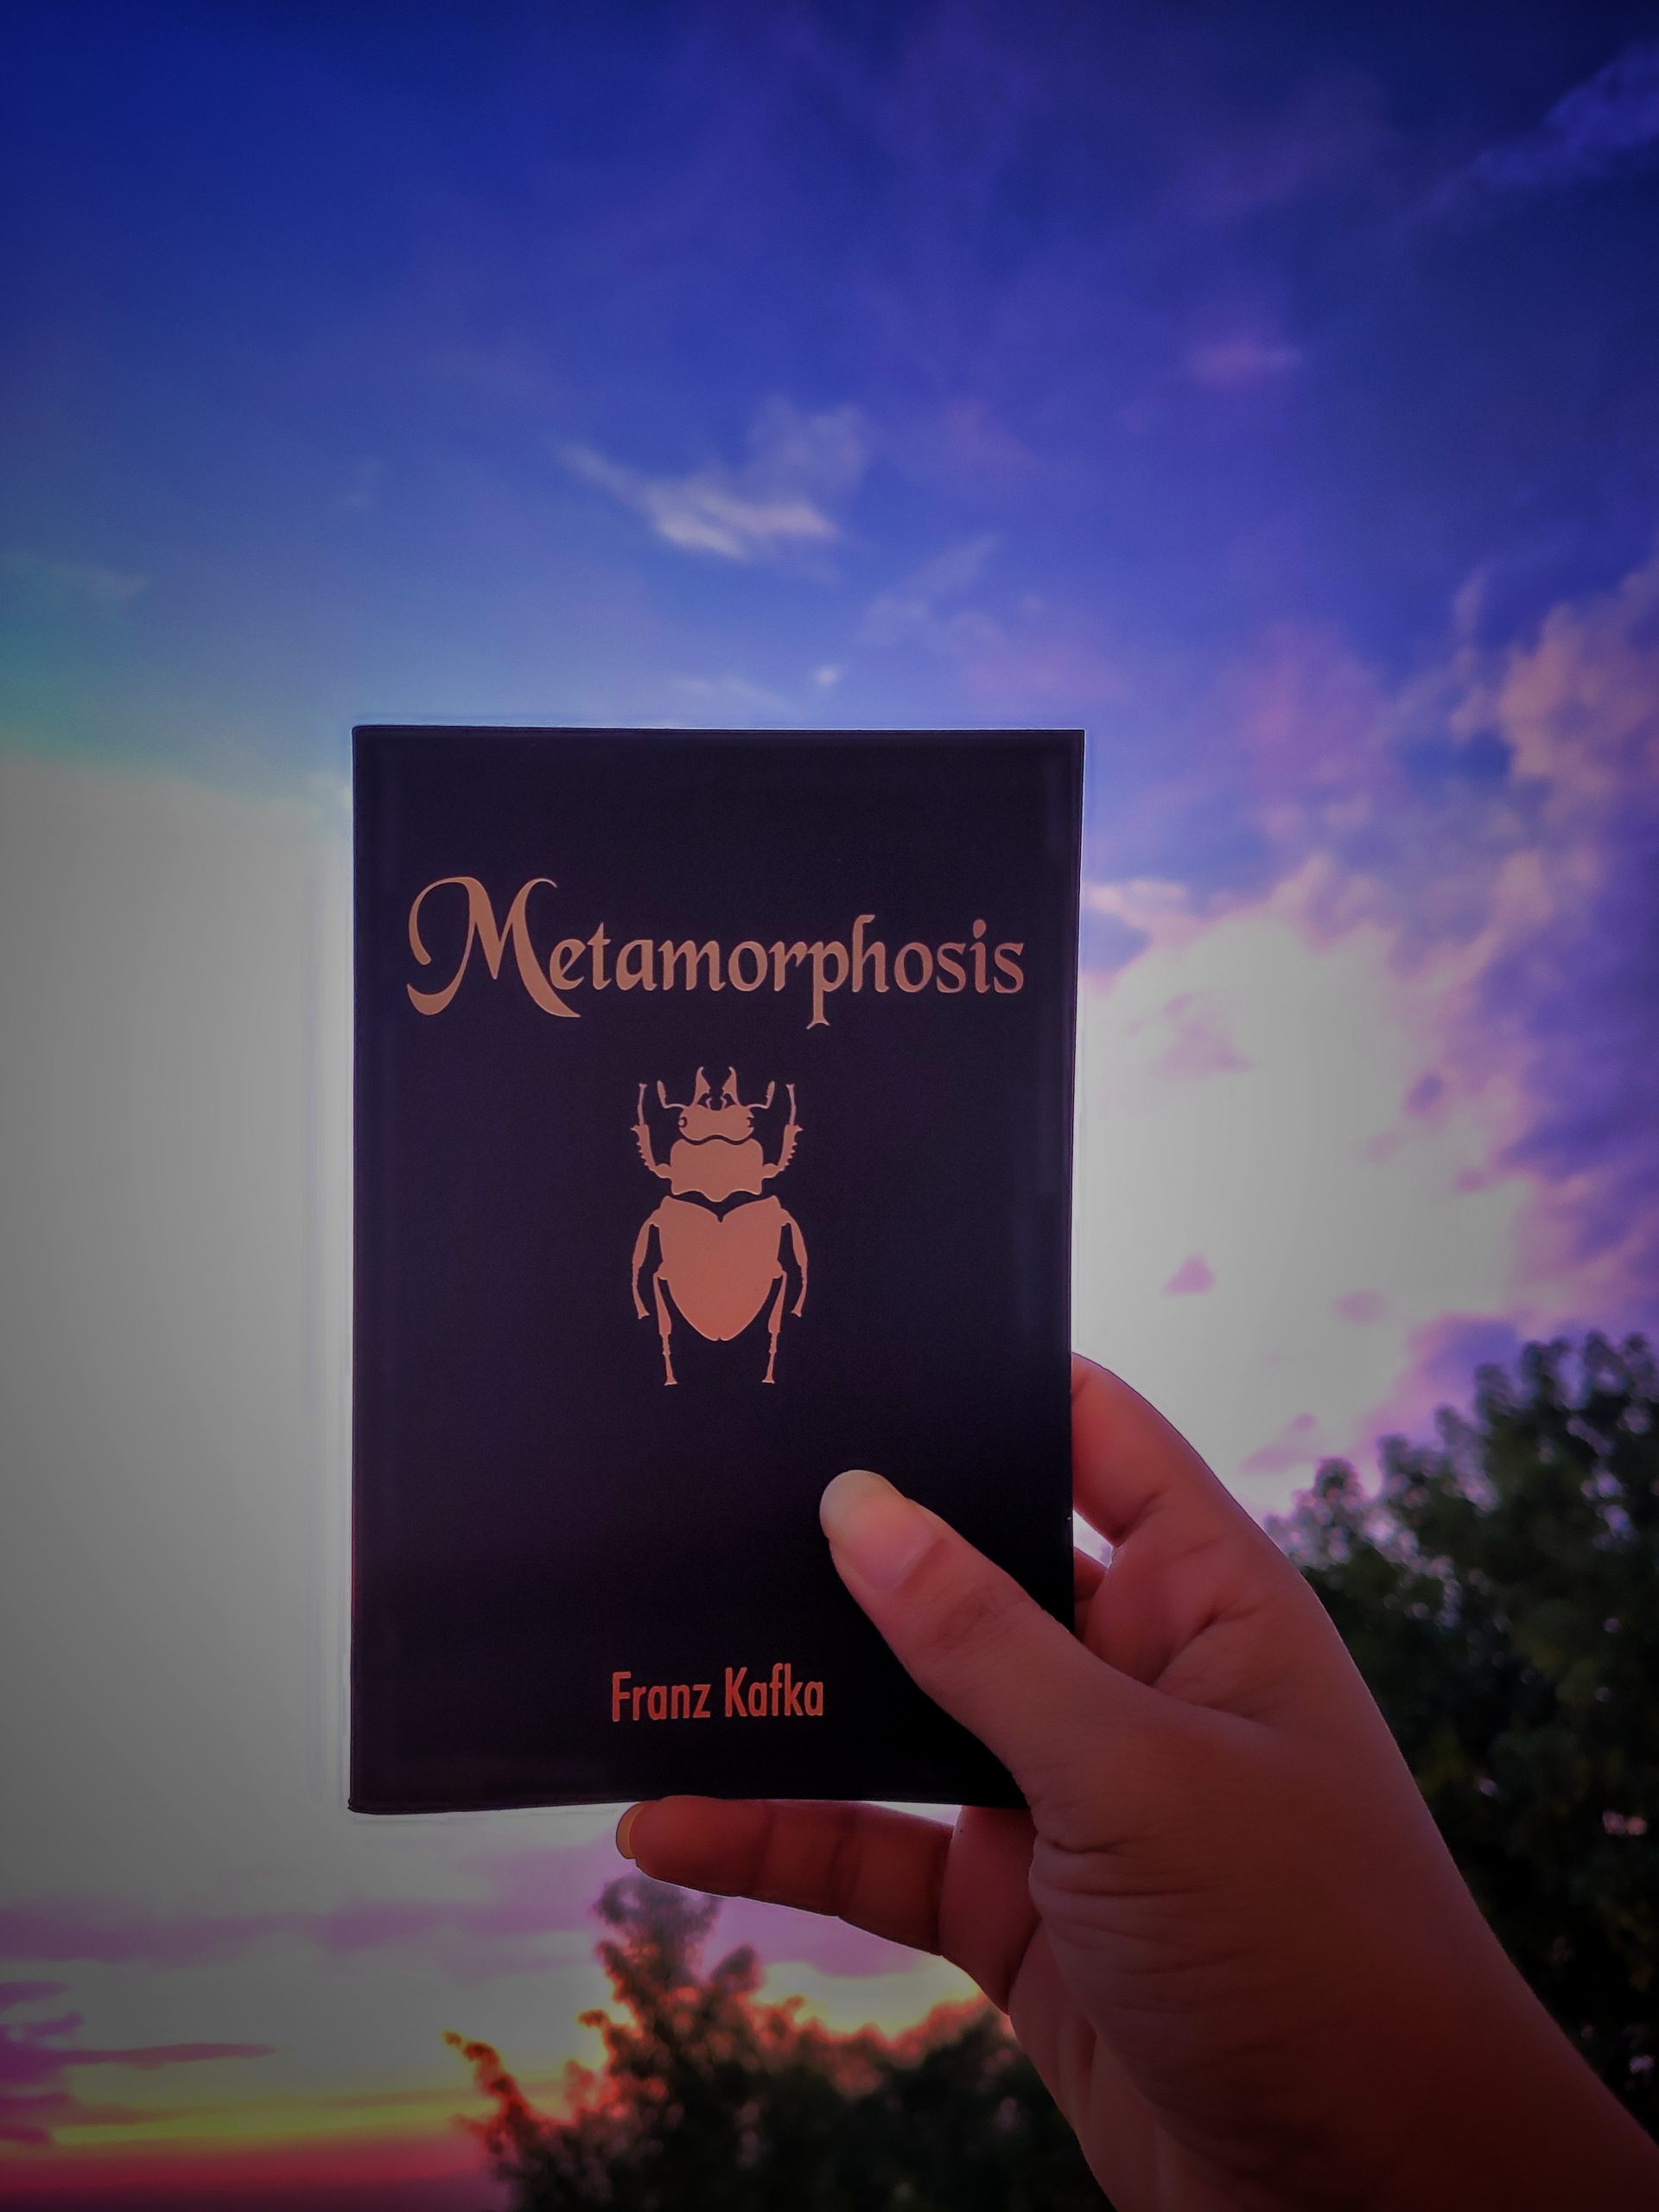 A metamorphosis Book in hand